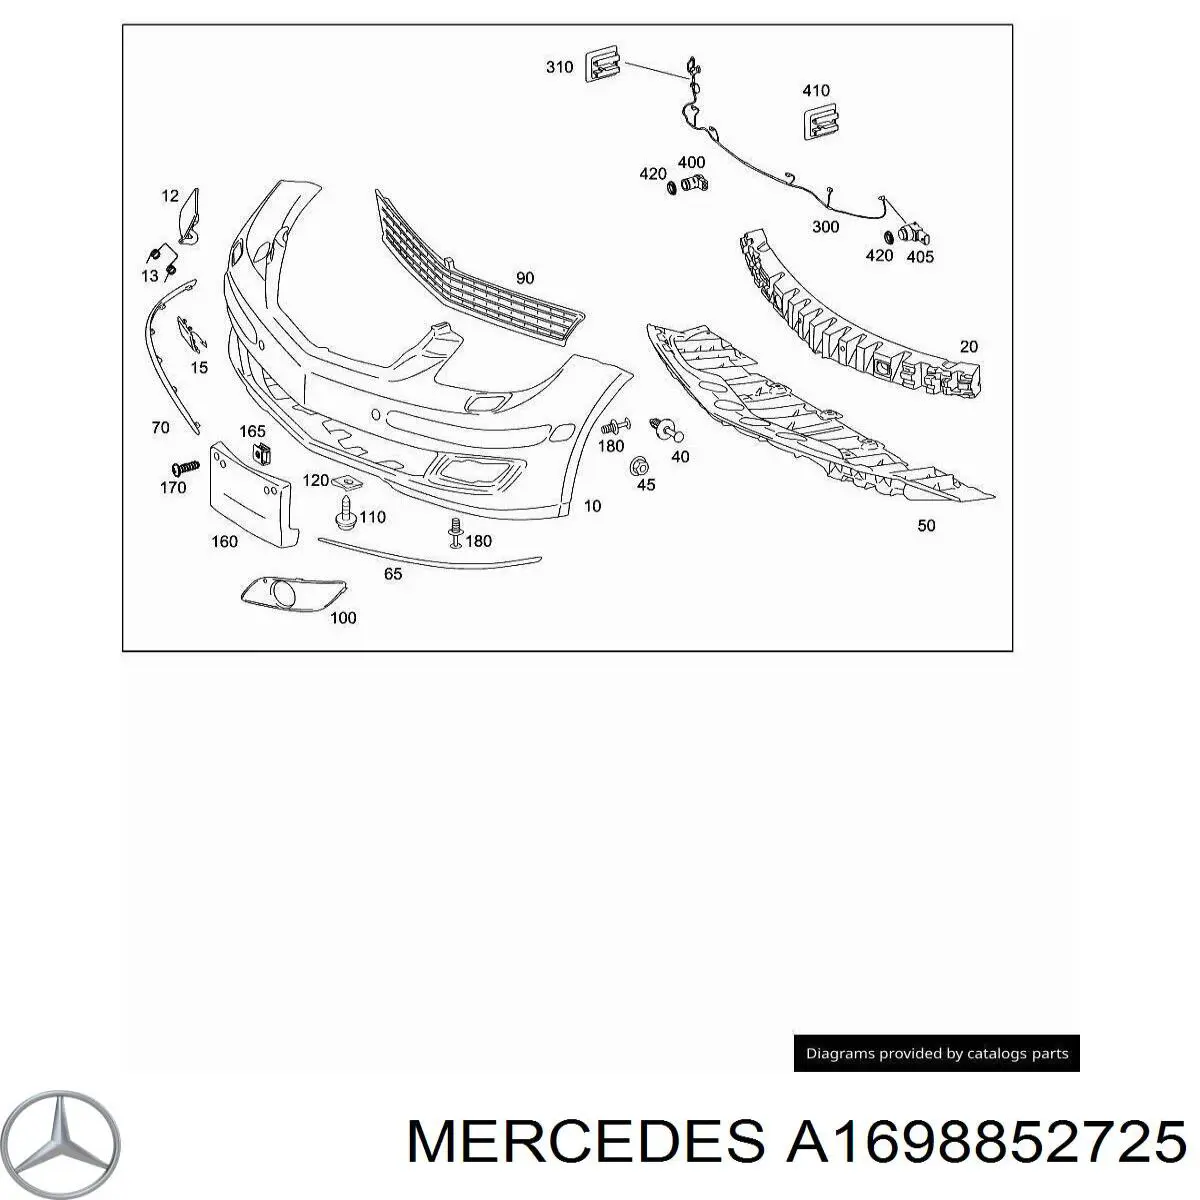 A1698852725 Mercedes передний бампер